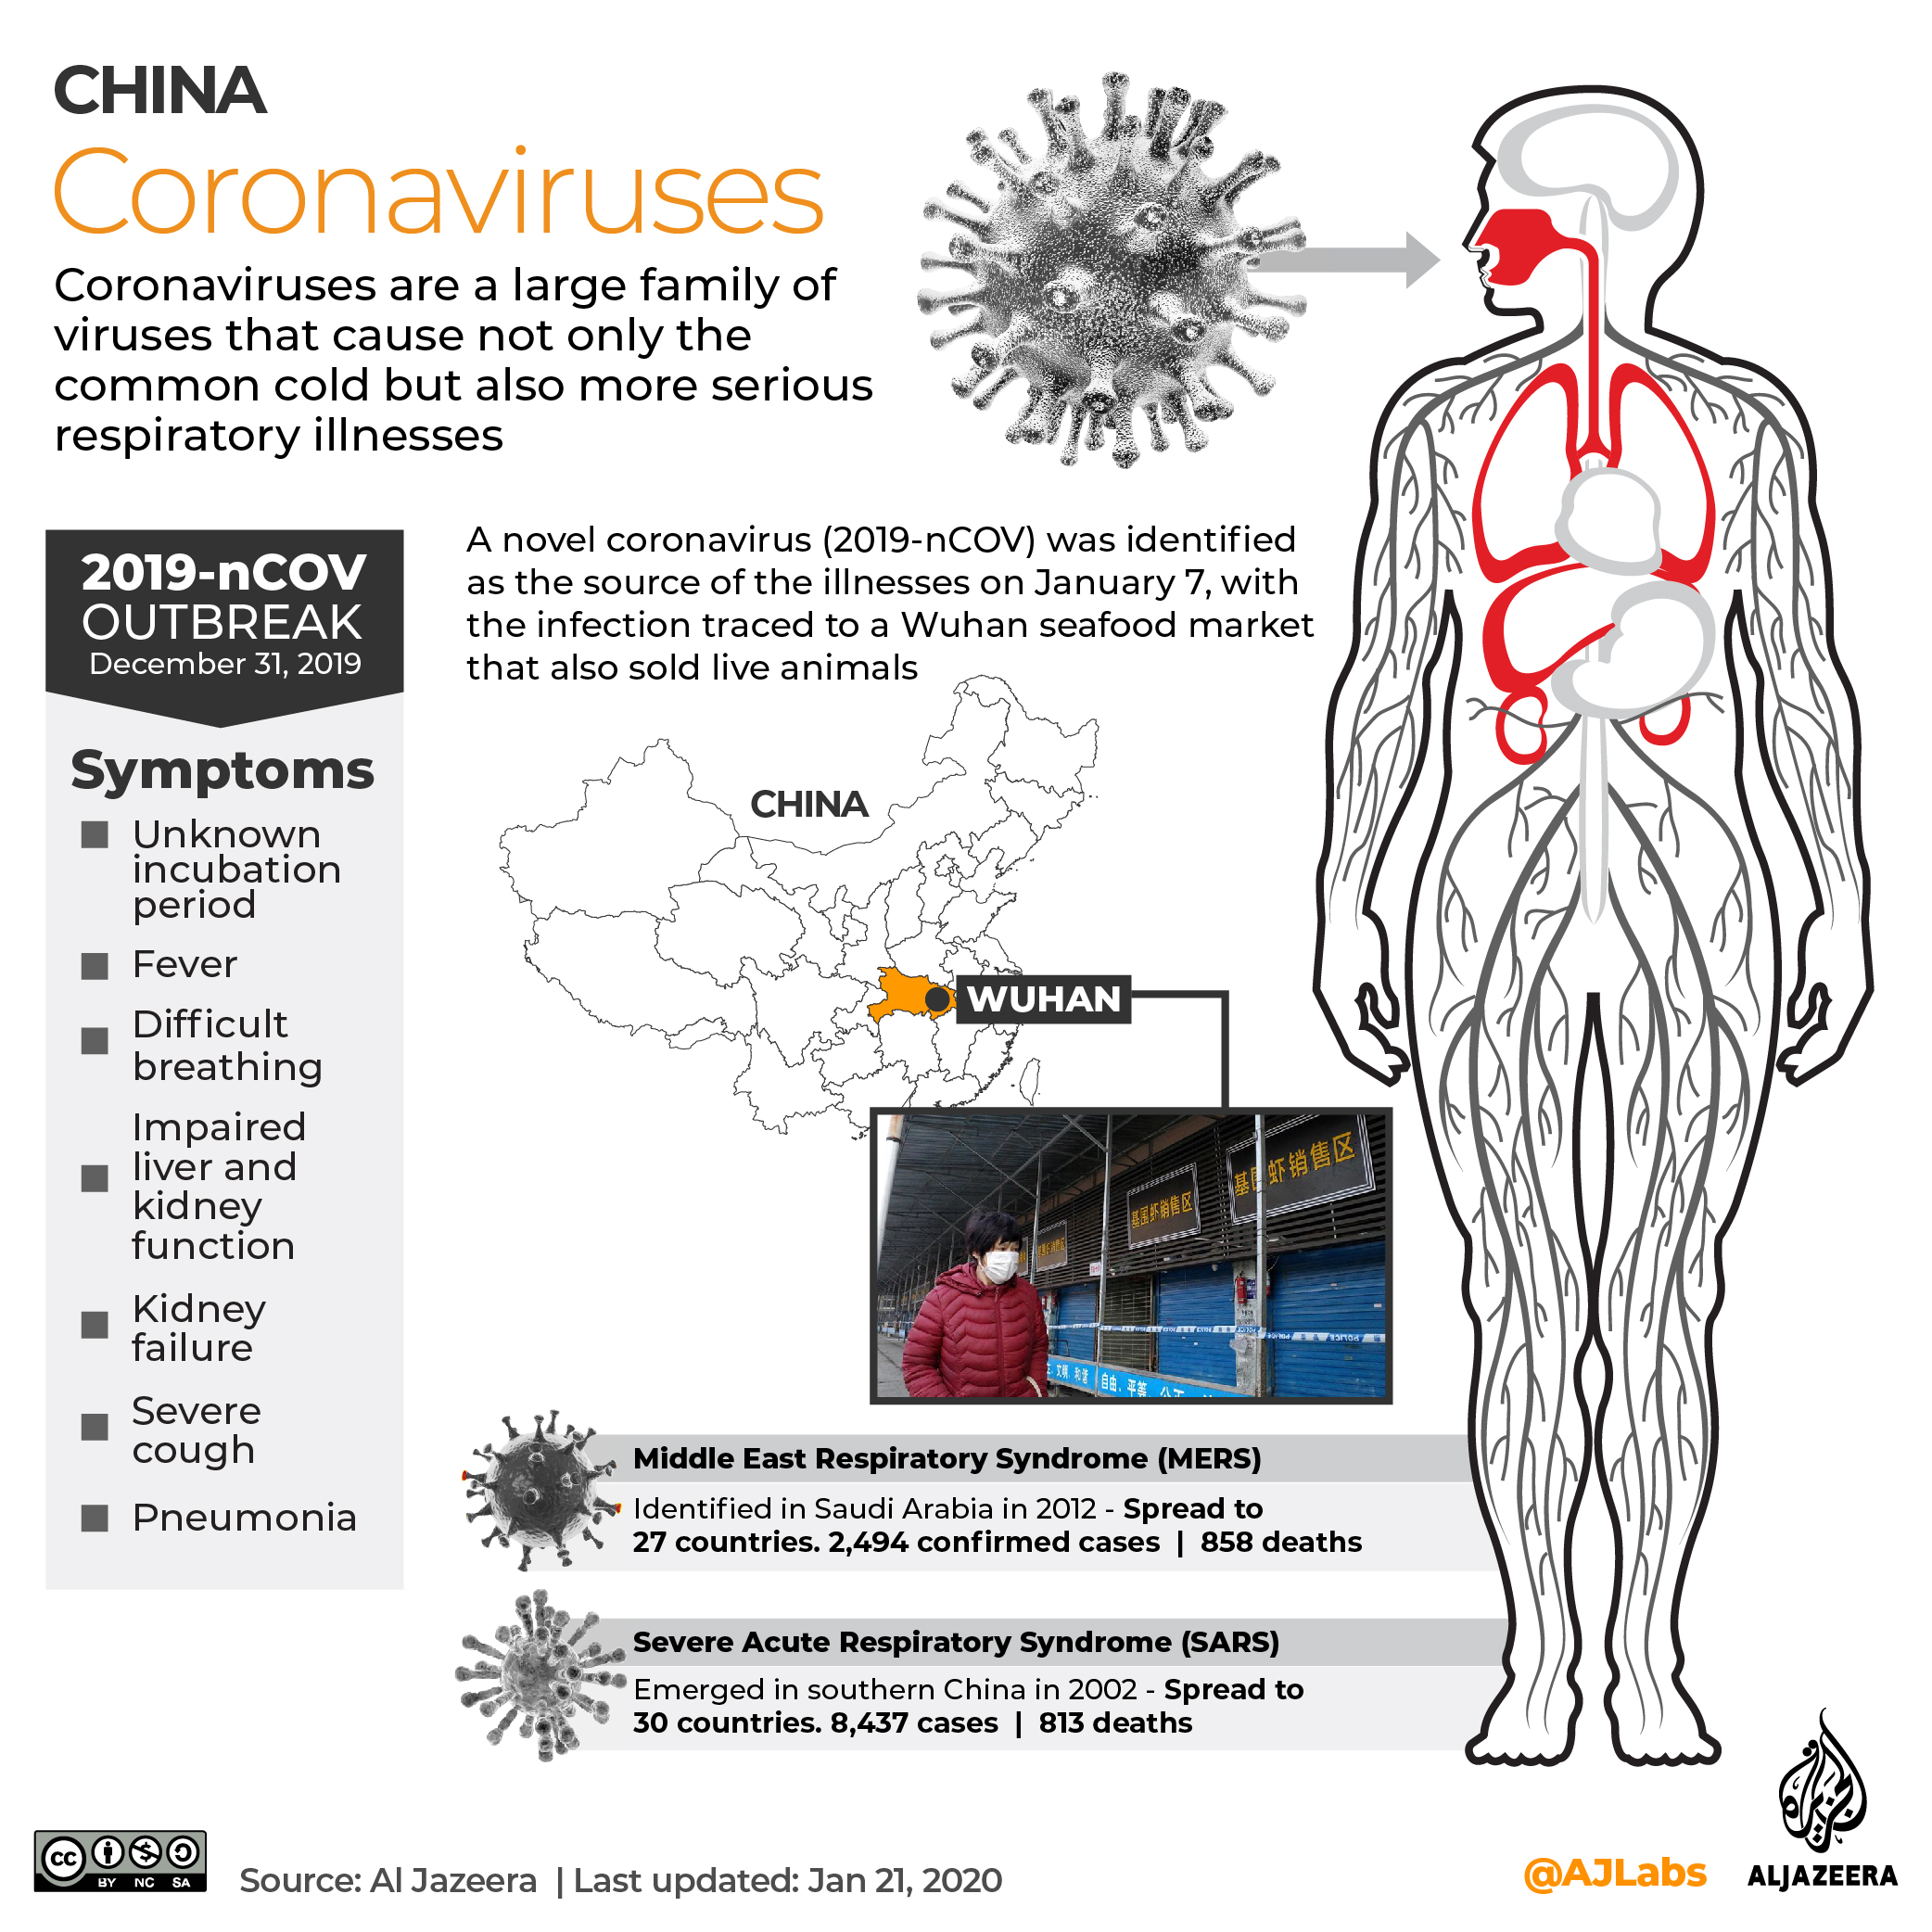 INTERACTIVE: Coronavirus 2019 - Feb 24, 2020 update